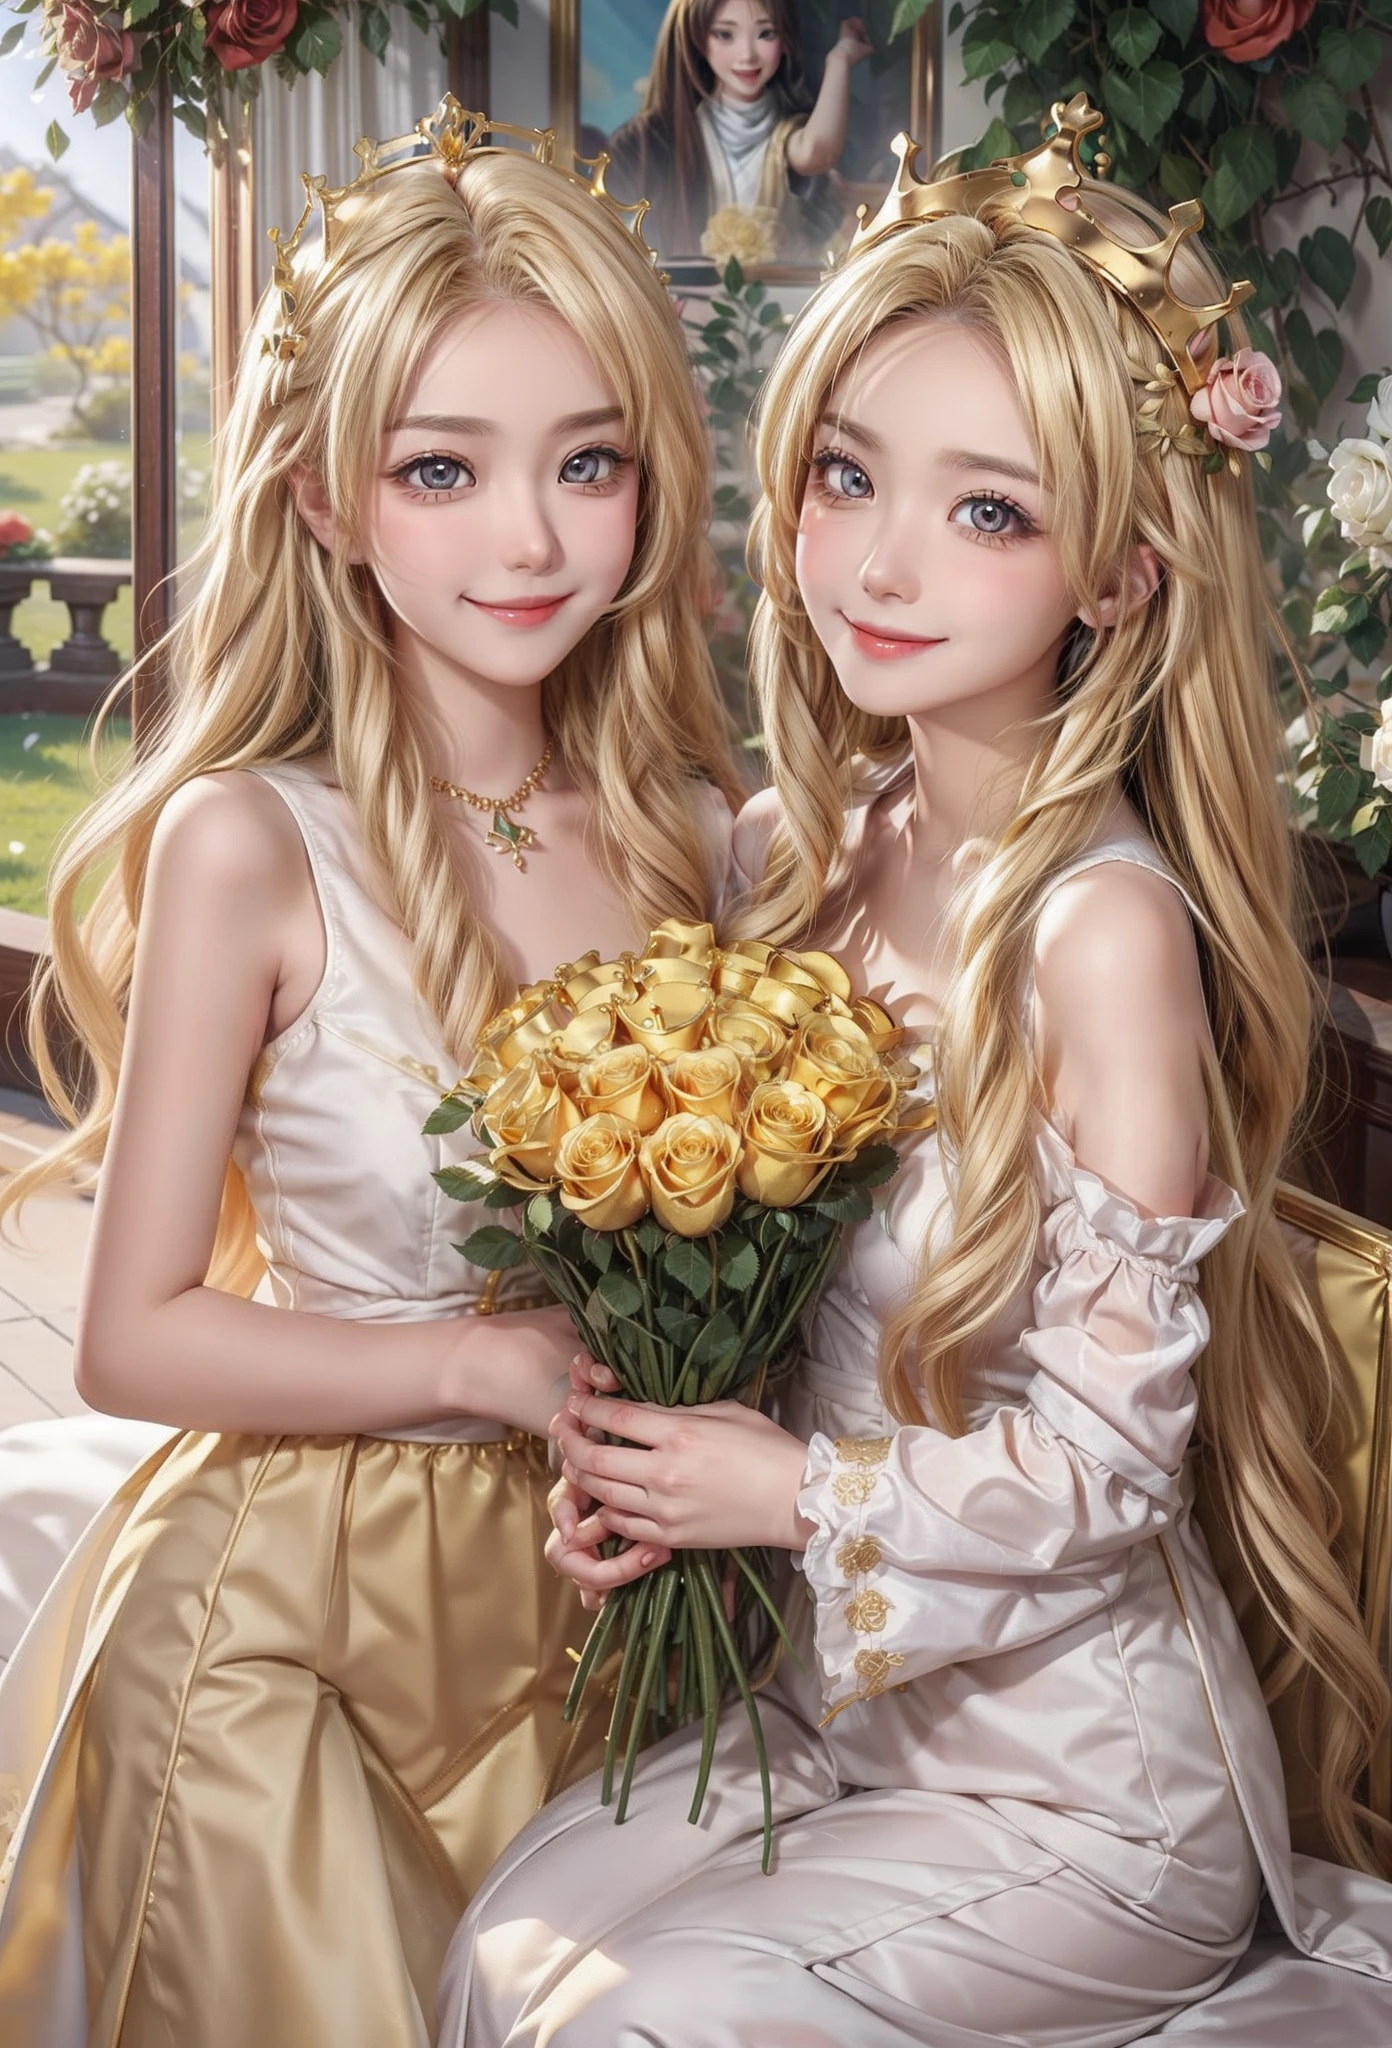 Apenas o sorriso de duas lindas garotas、duo,olhos dourados、cabelos dourados、cheio de rosas、coroas、